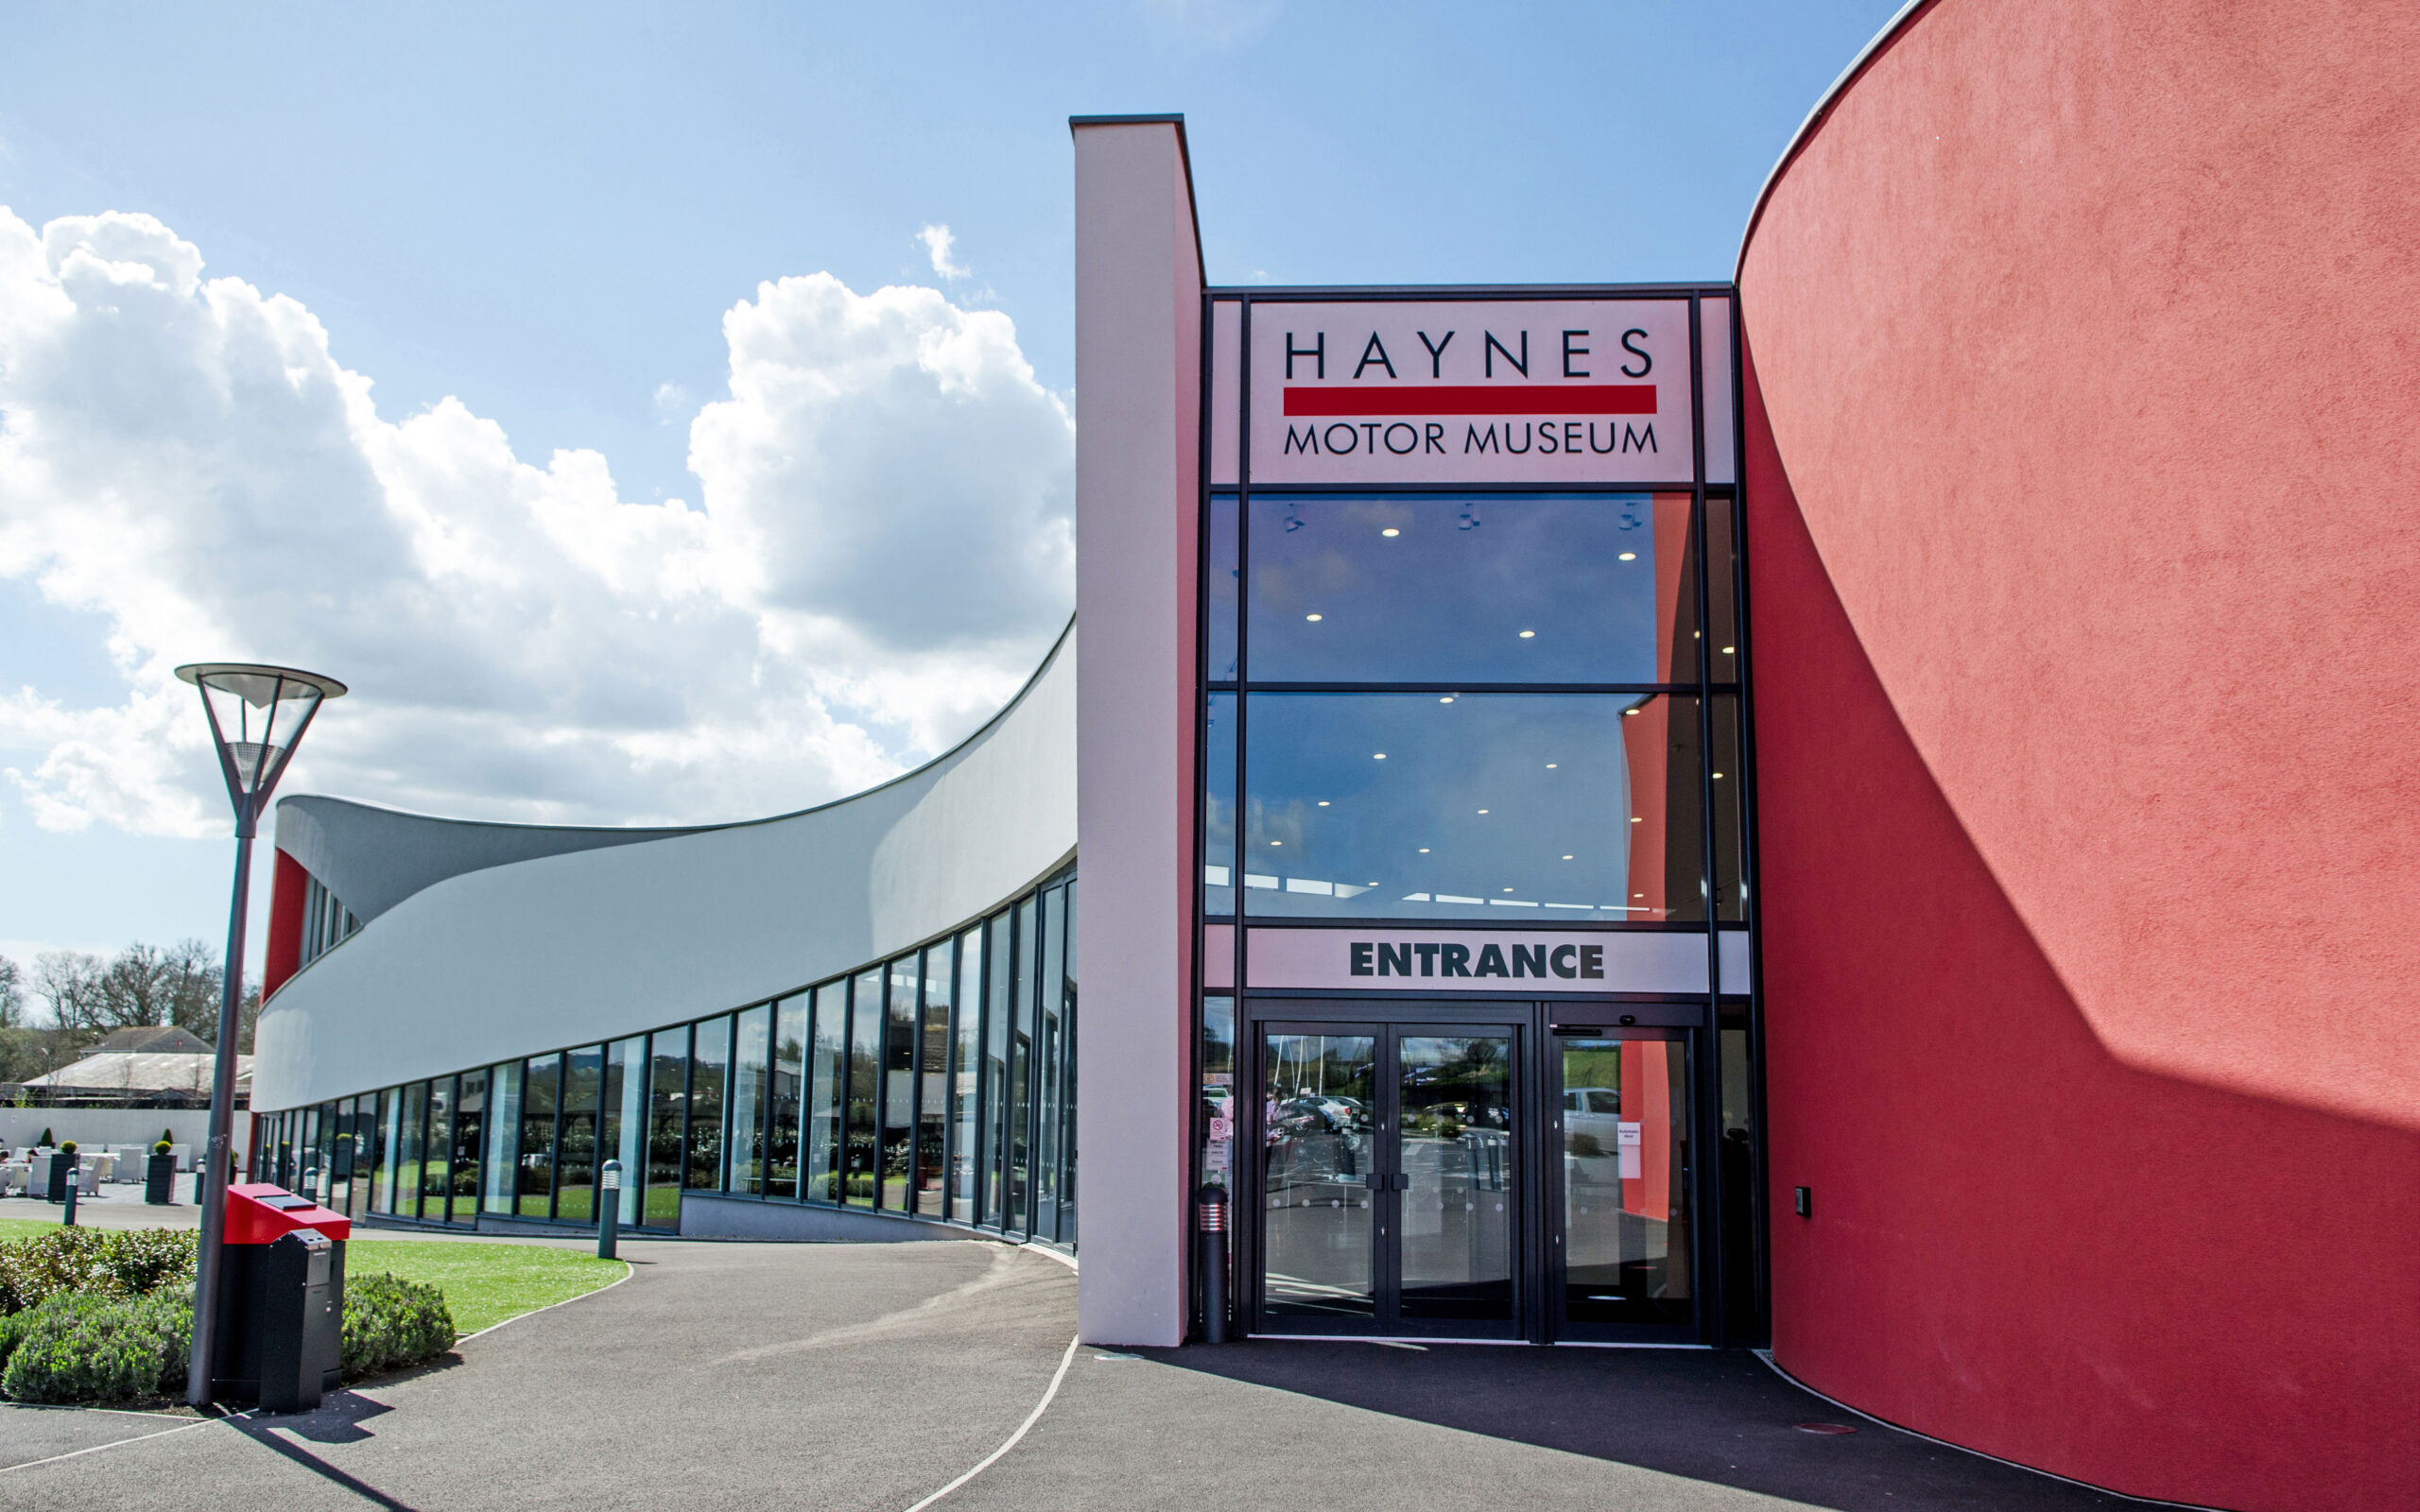 Haynes Motor Museum is at Sparkford, Somerset